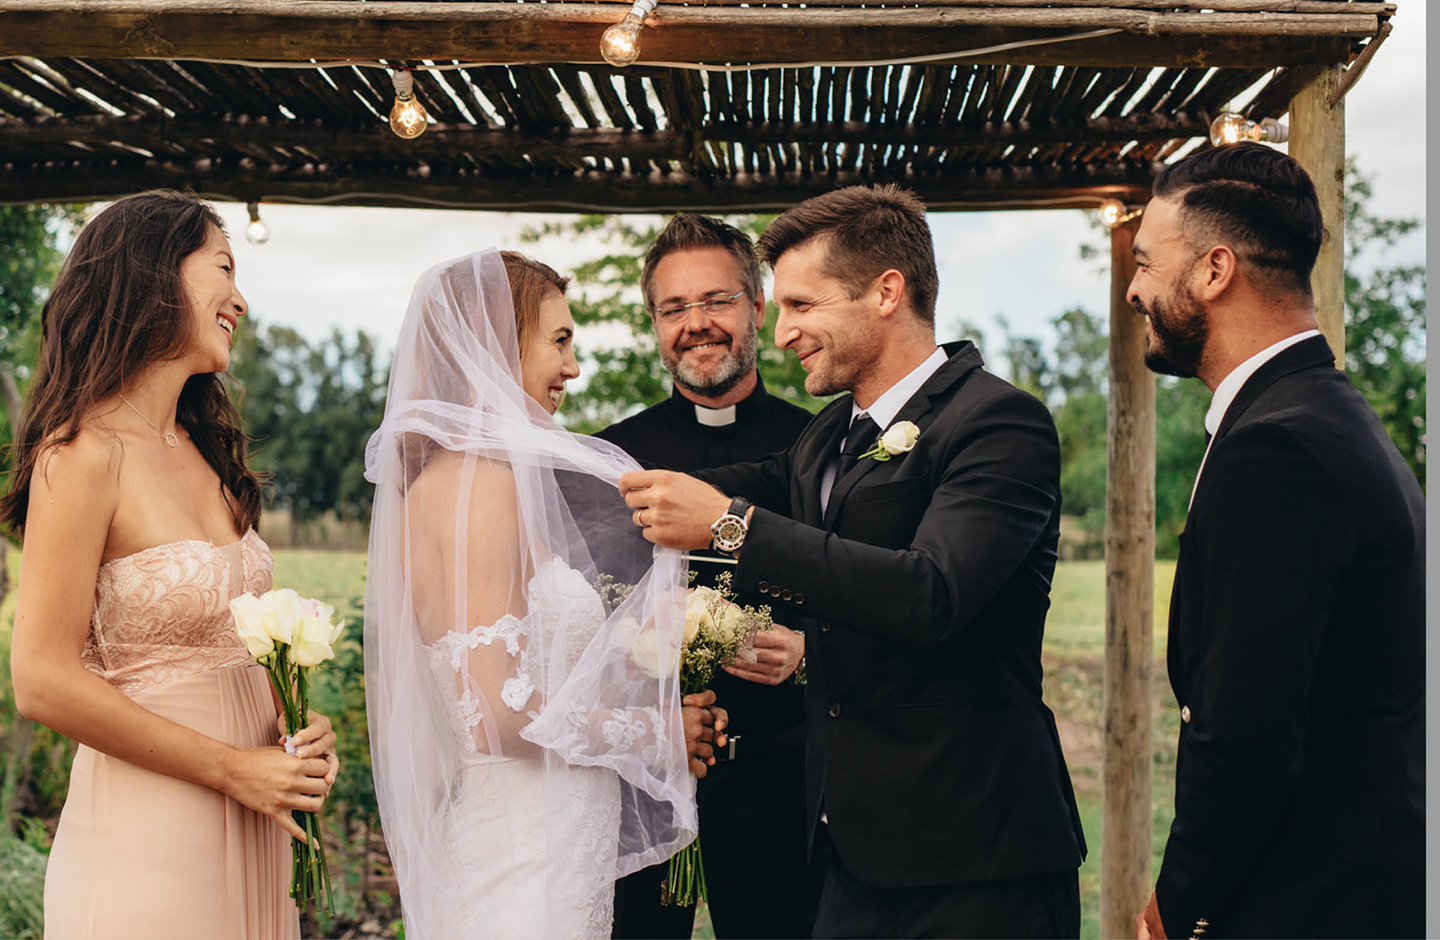 Bräutigam nimmt Braut den Schleier ab. Der Trauredner steht im Hintergrund. Links und rechts neben dem Brautpaar stehen die Trauzeugin und der Trauzeuge.